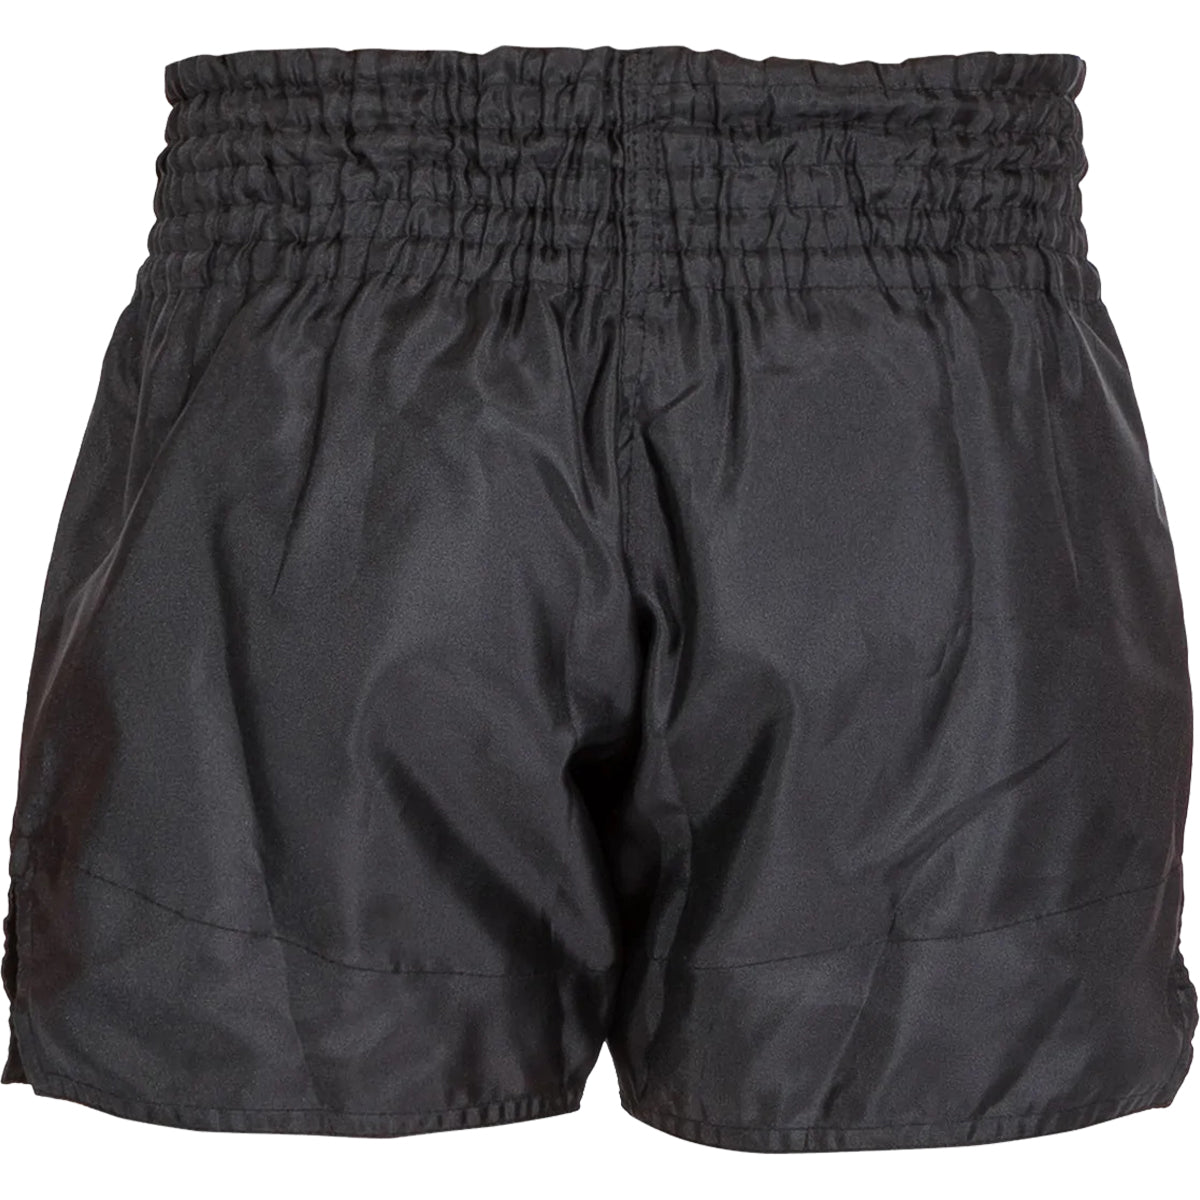 Venum Classic Muay Thai Shorts - Black/Black Venum